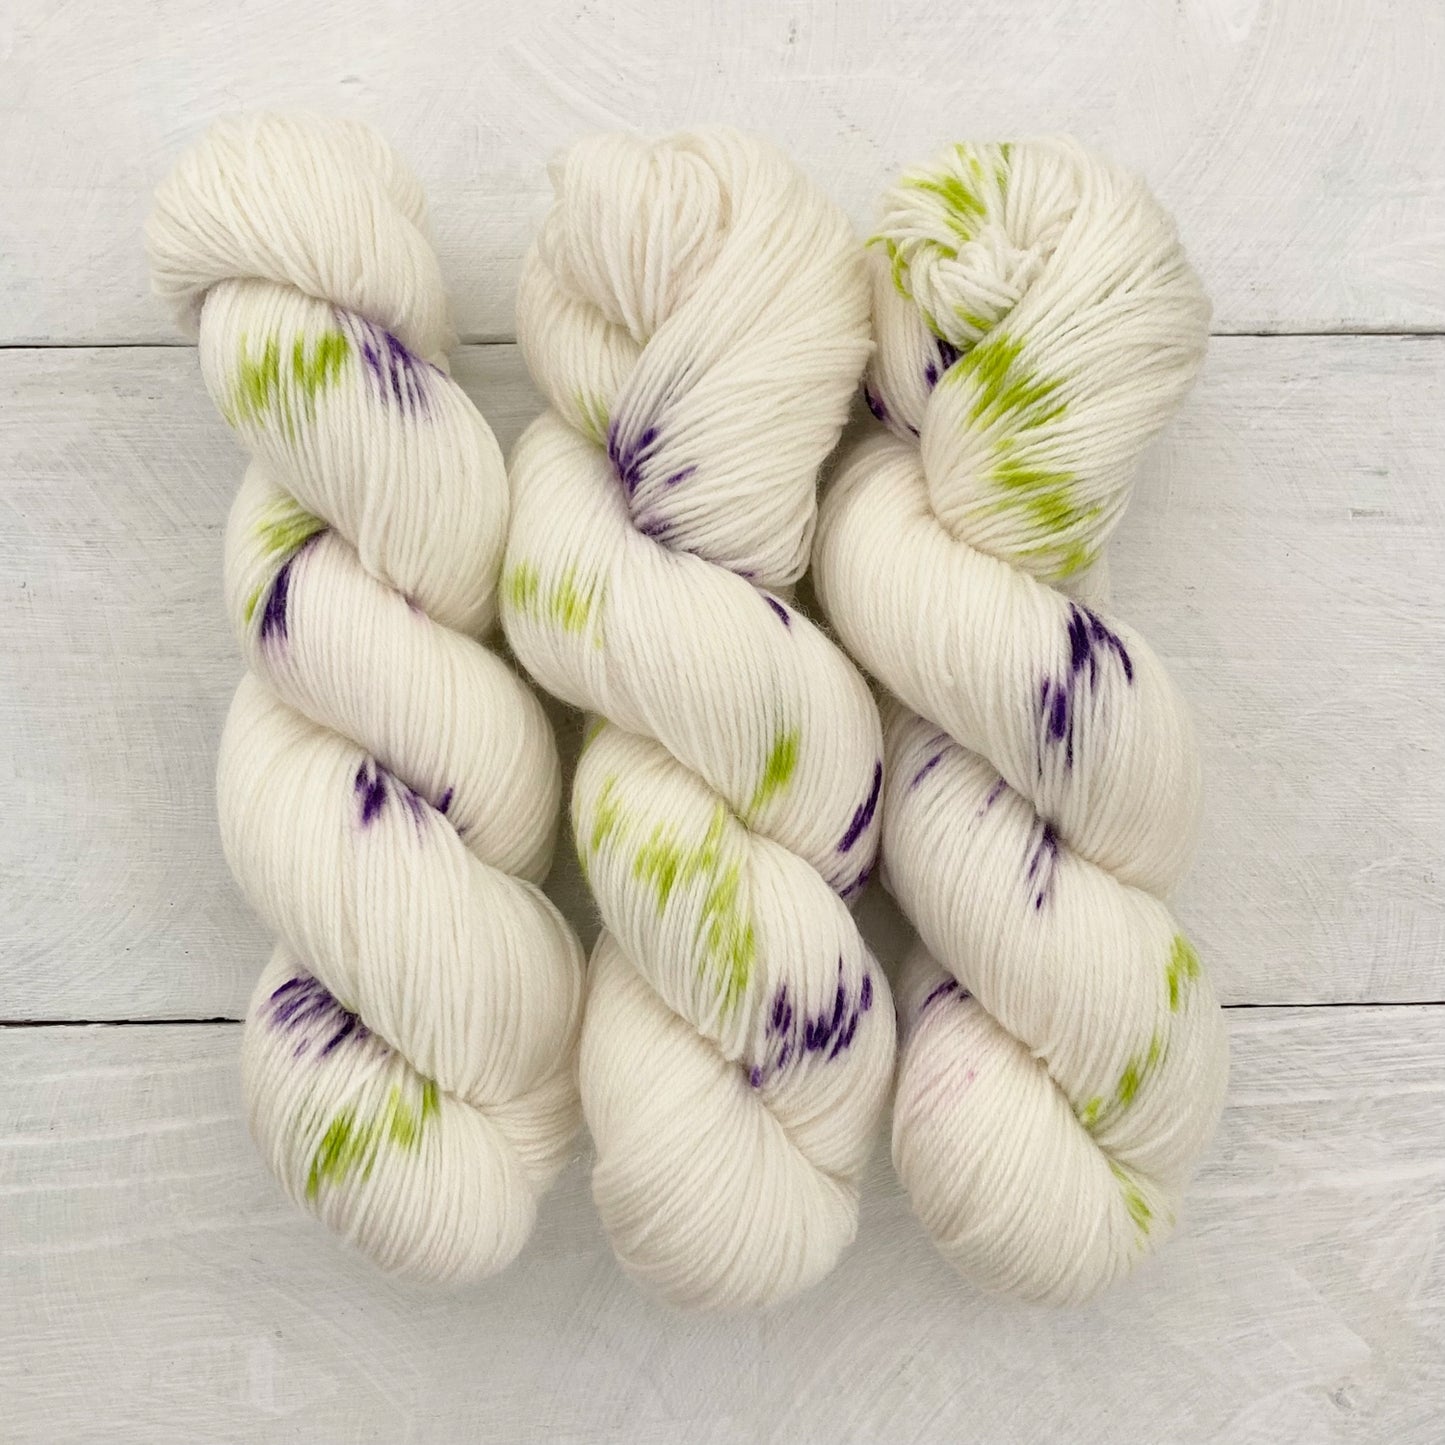 Hand-dyed yarn No.219 sock yarn "Die verschwiegene Nachtigall"